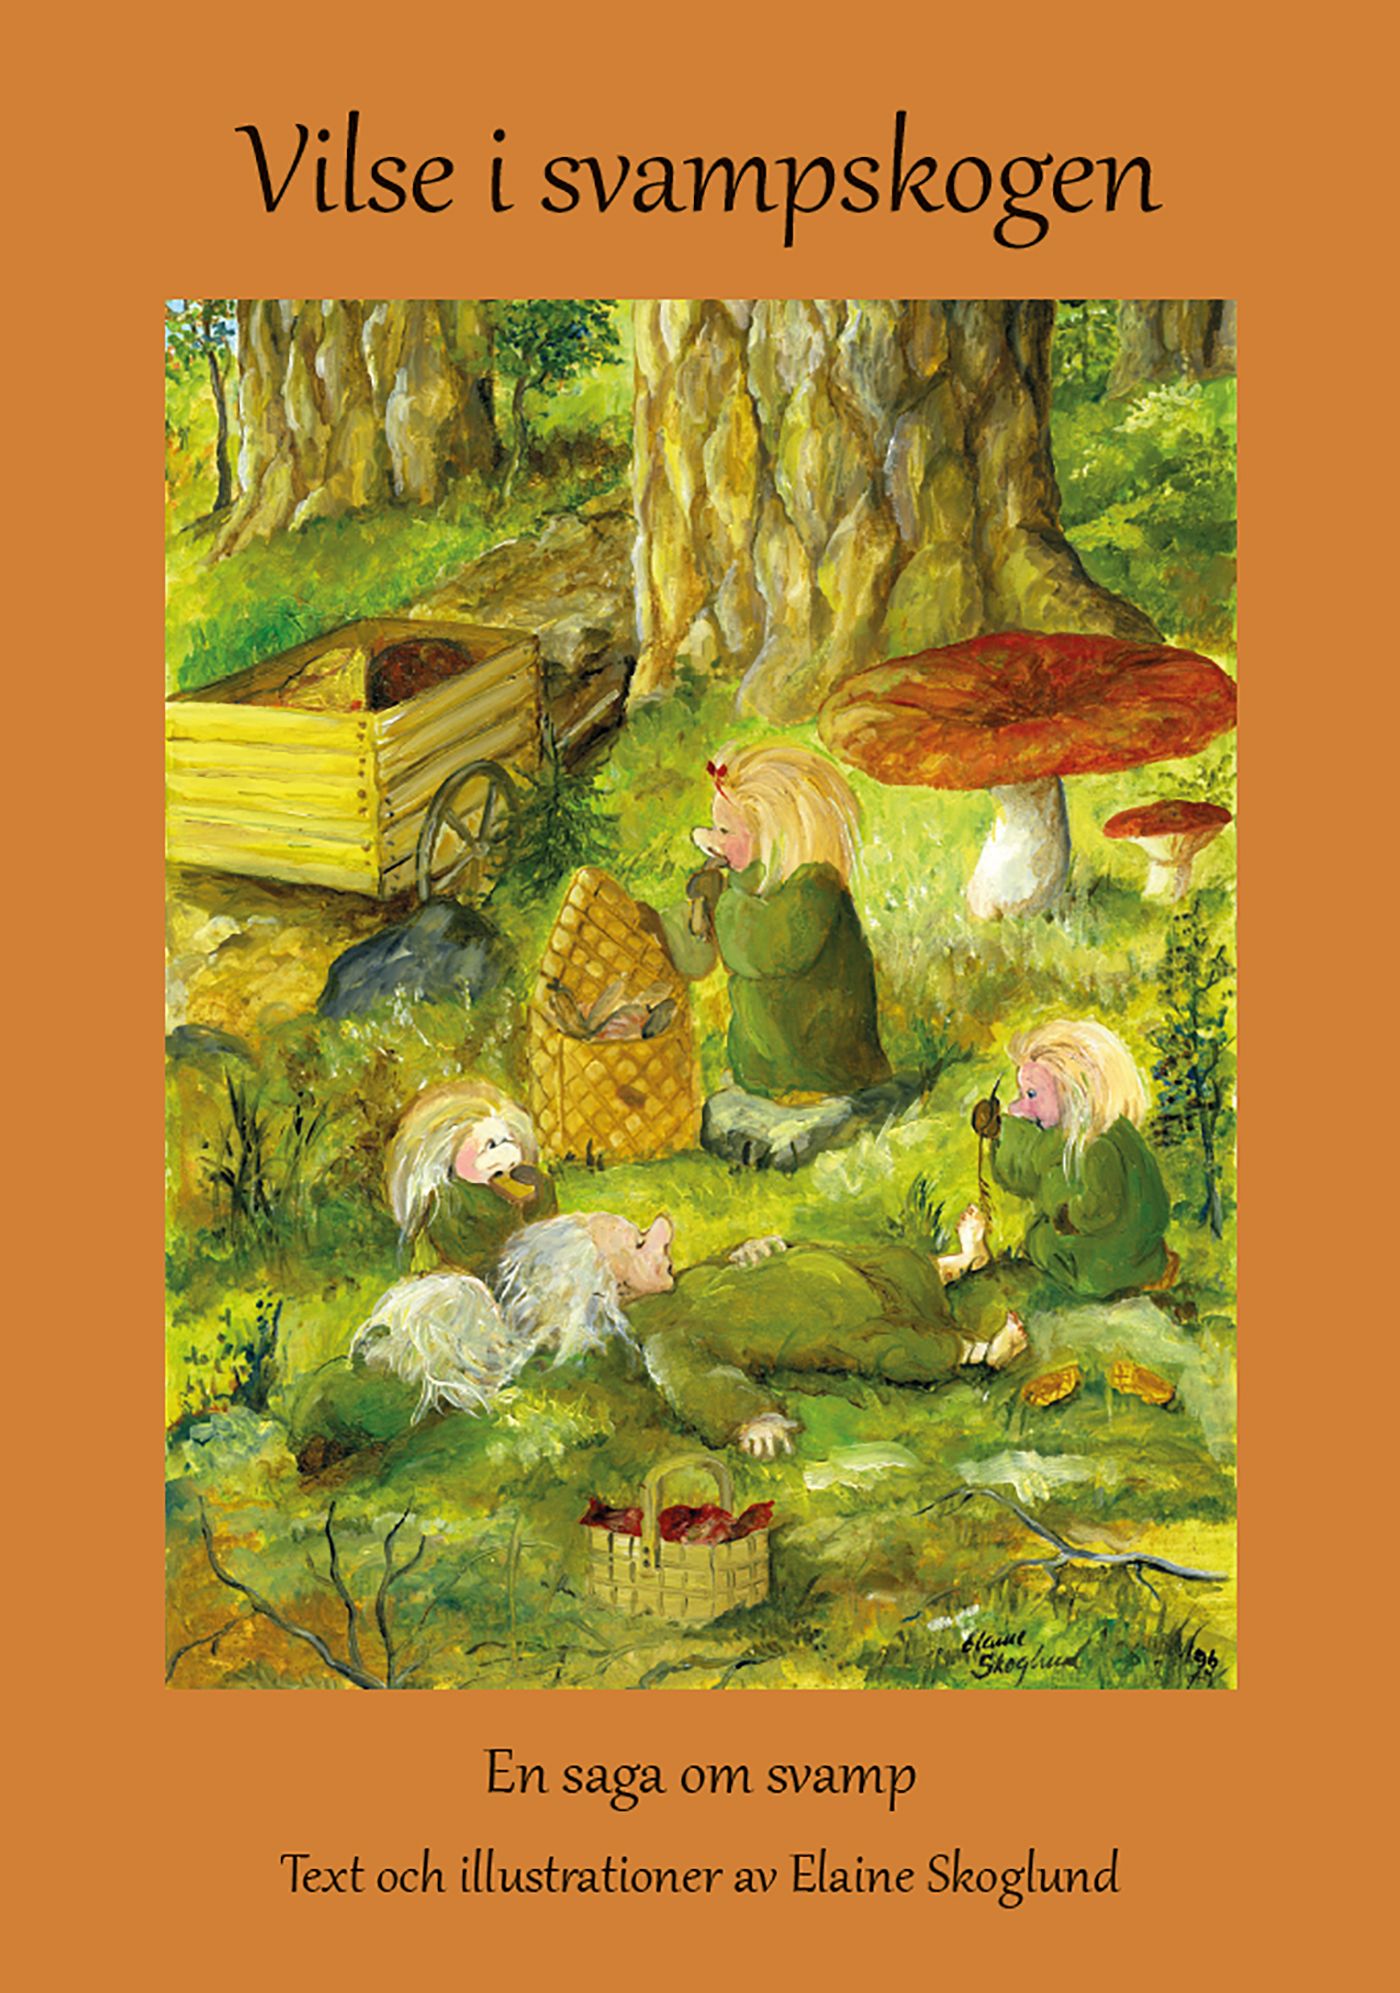 Vilse i svampskogen, eBook by Elaine Skoglund